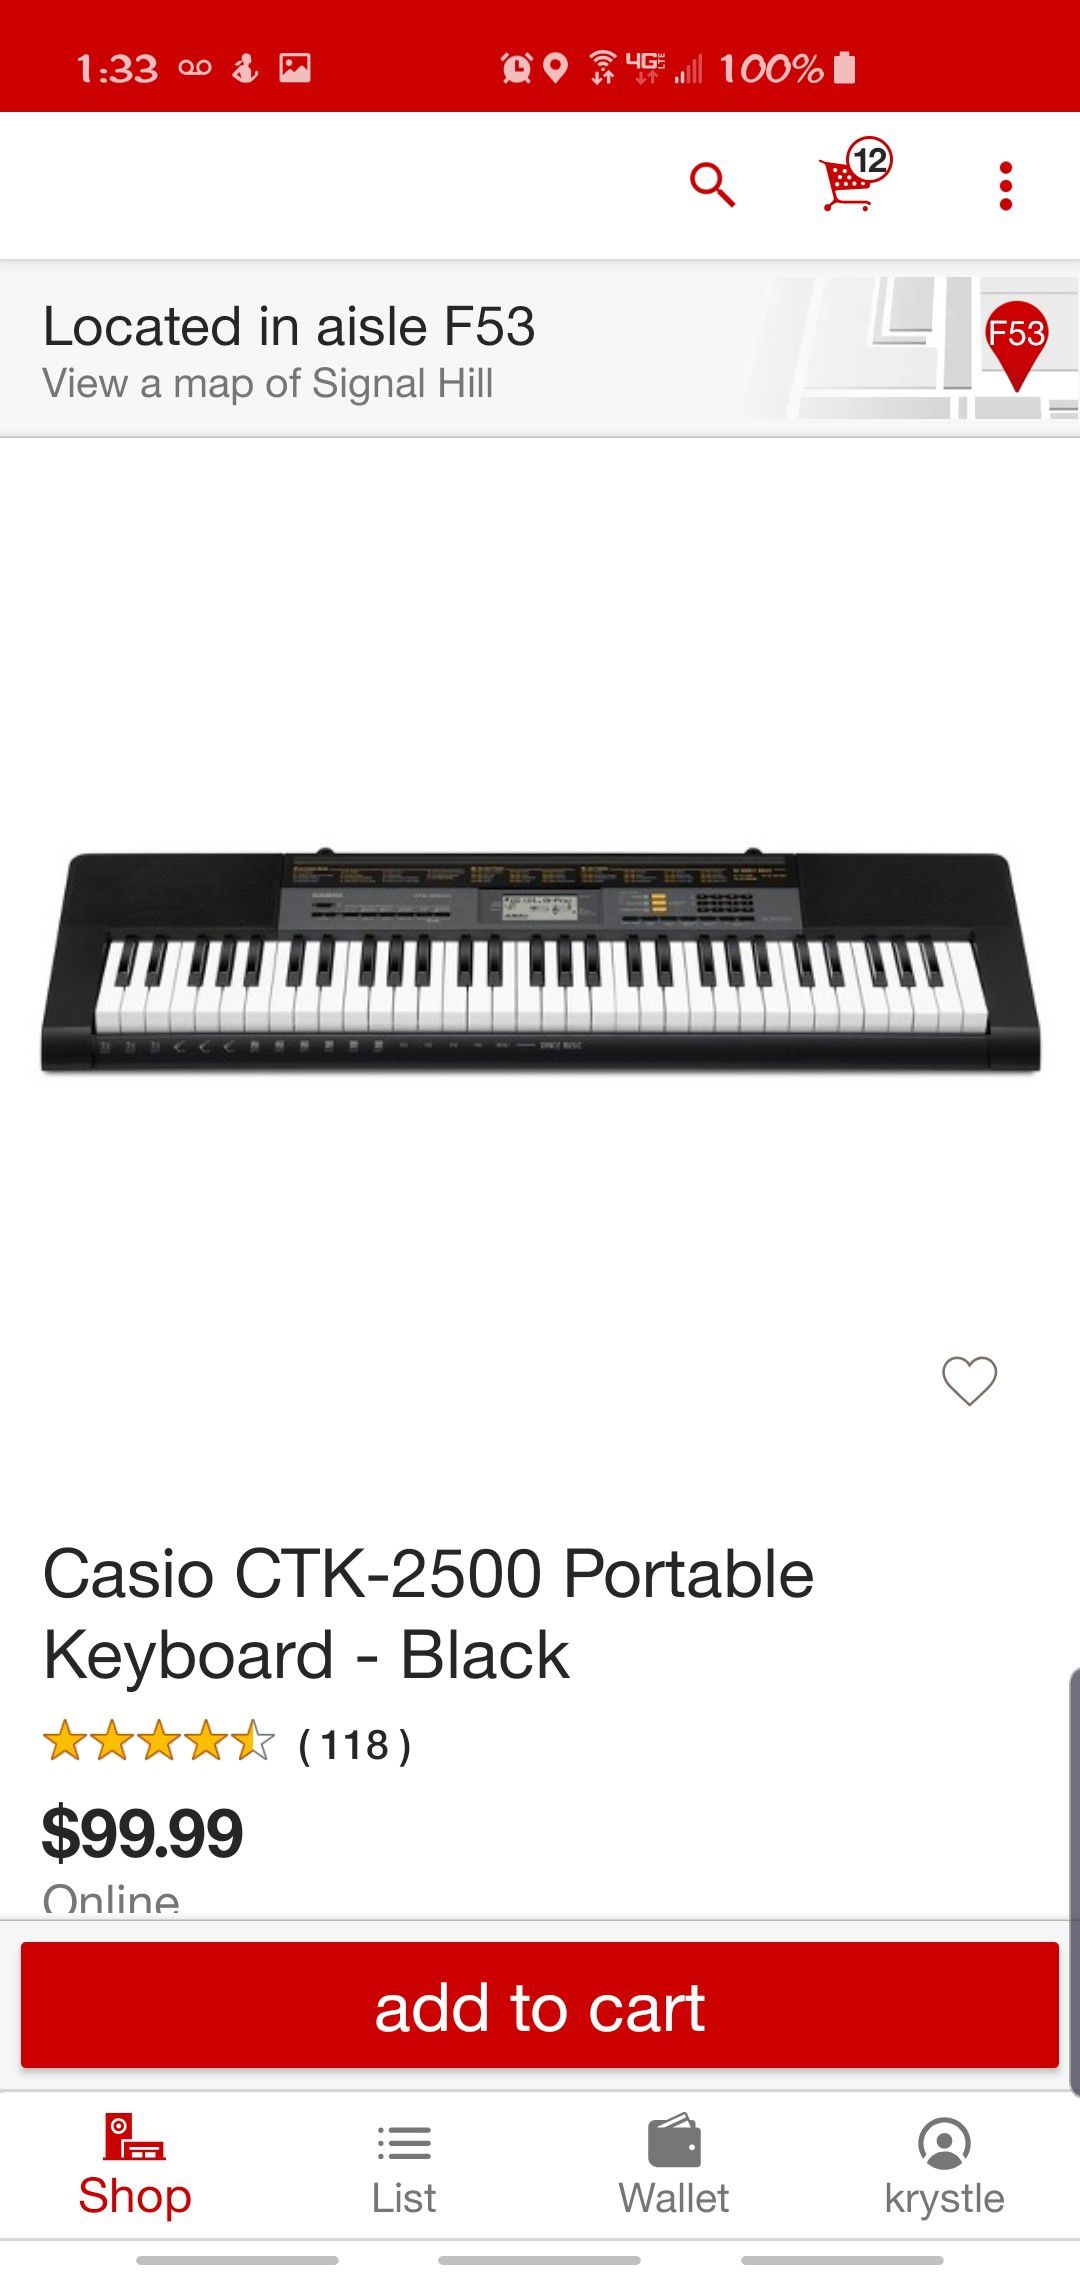 NIB Casio CTK-2500 Portable Keyboard - Black